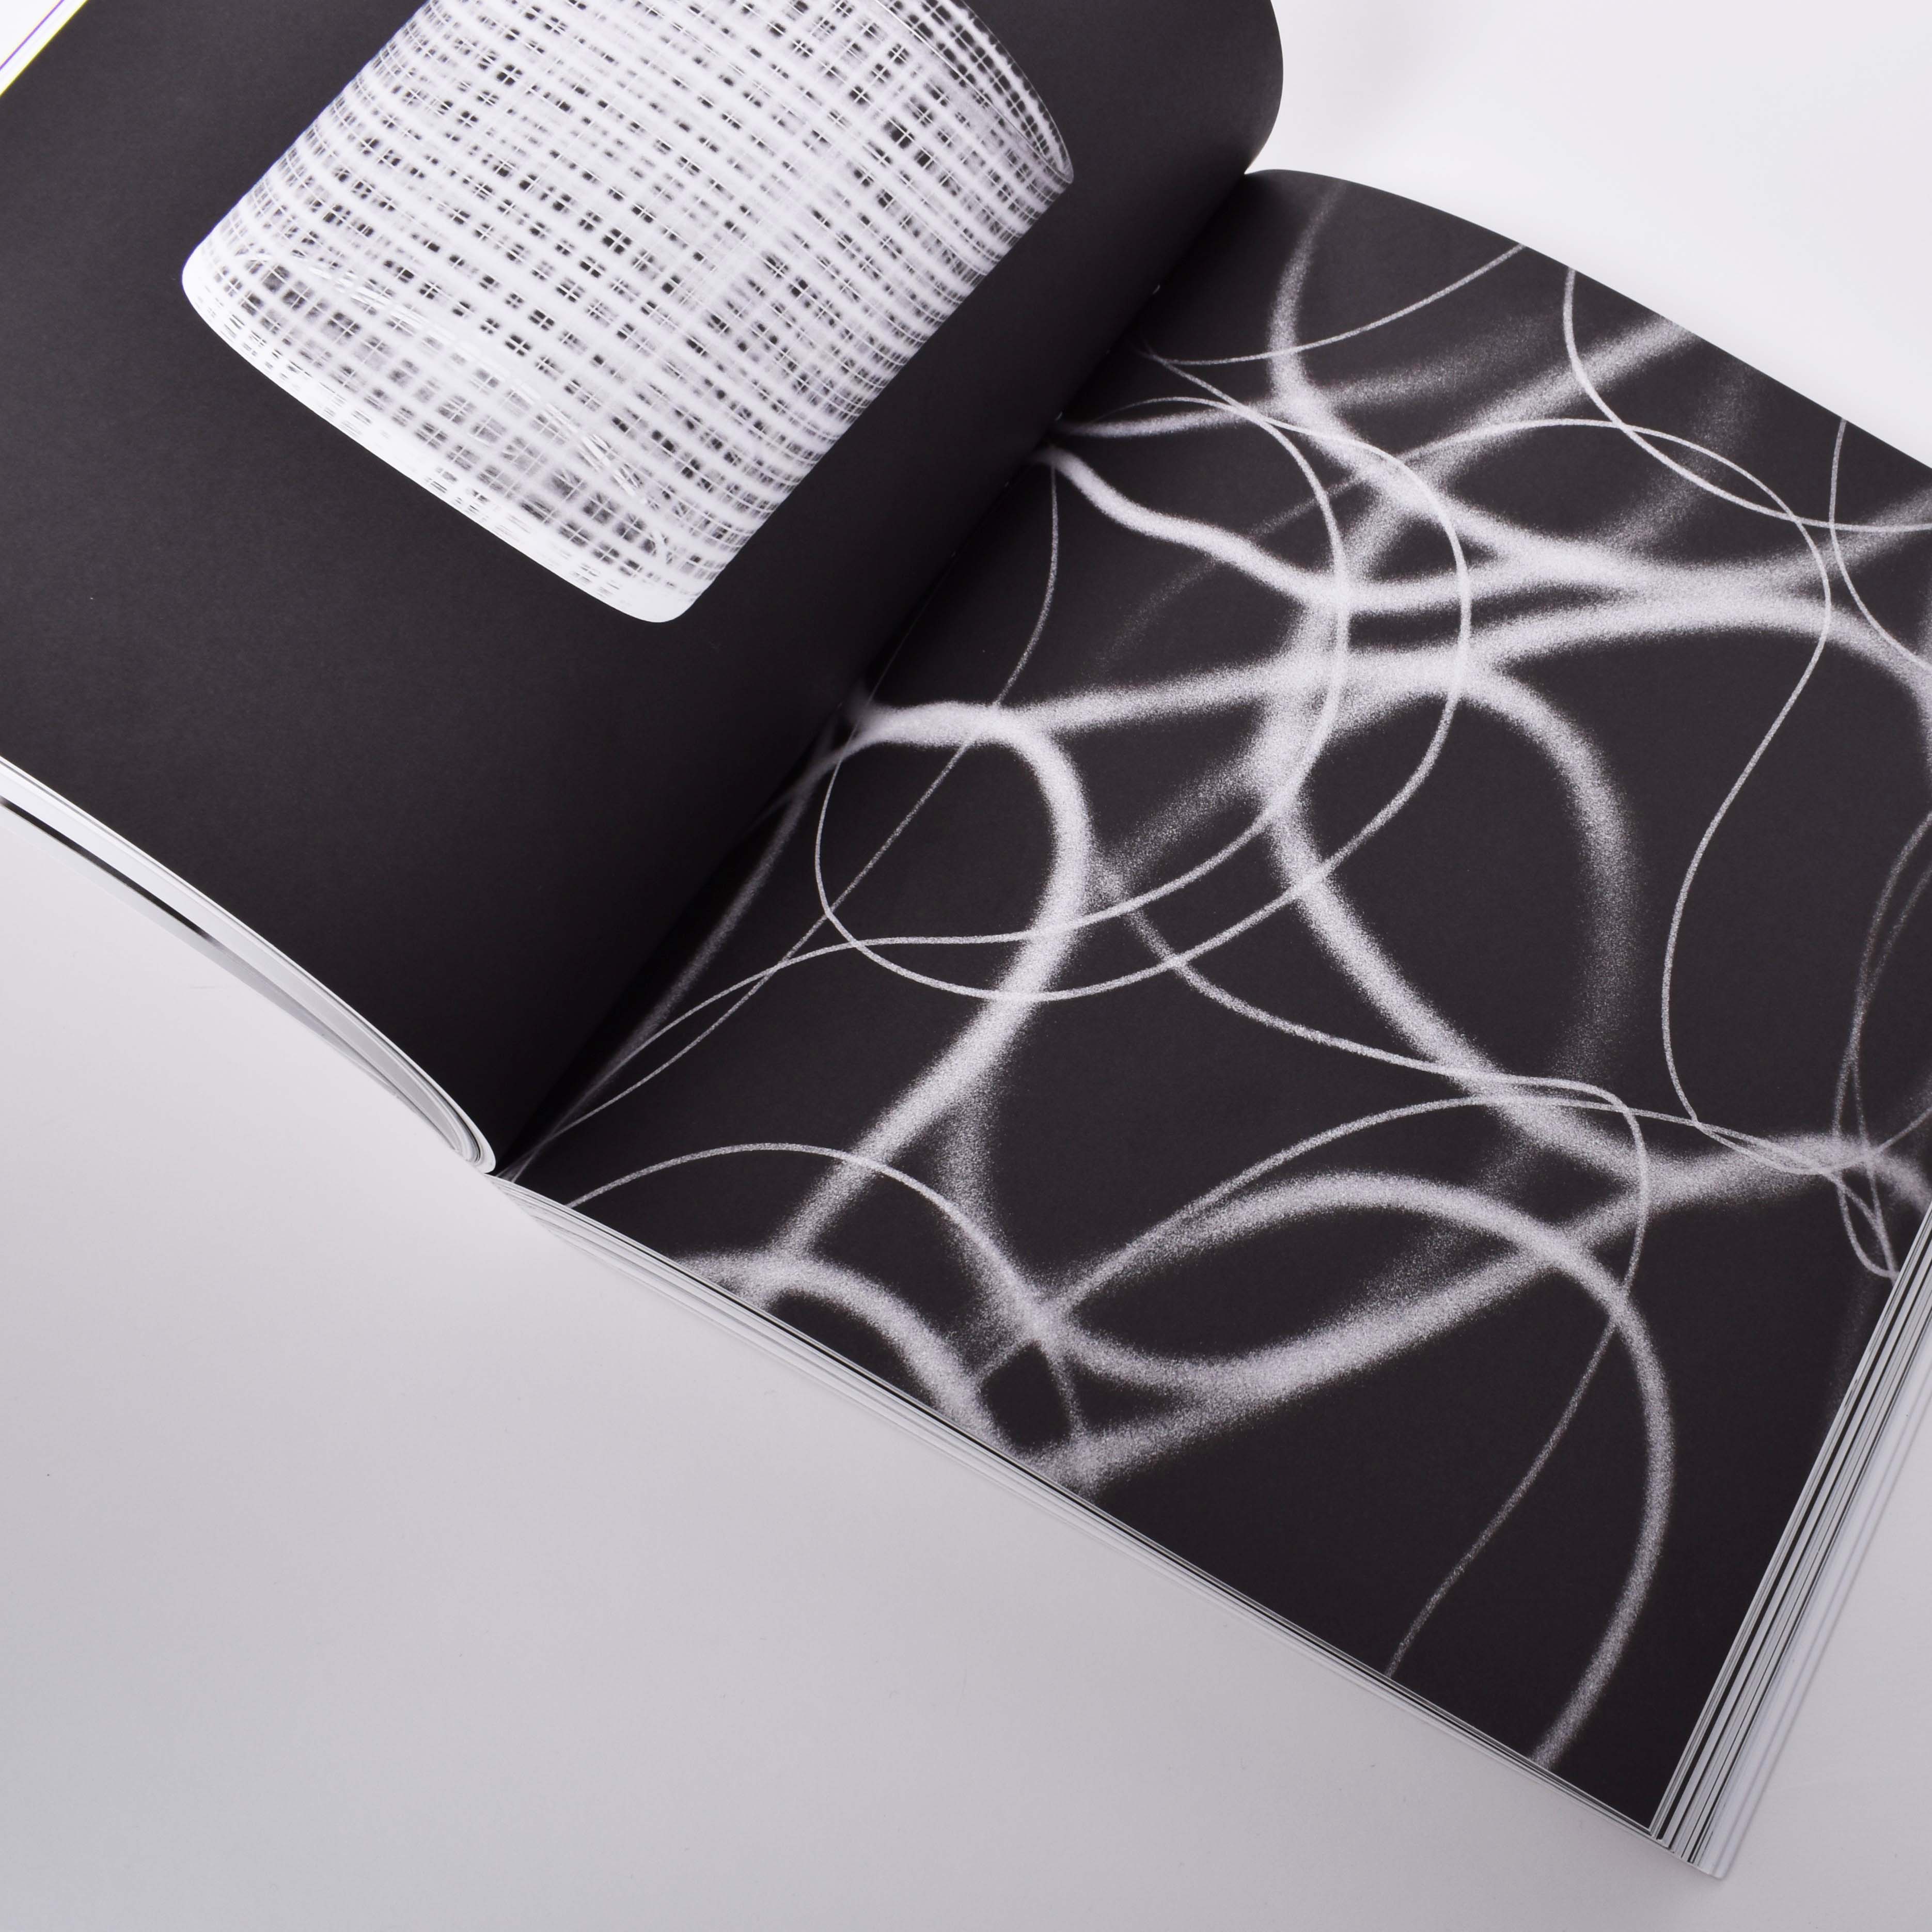 insida i boken Ingegerd Råman med mönster på glas designat av konstnären